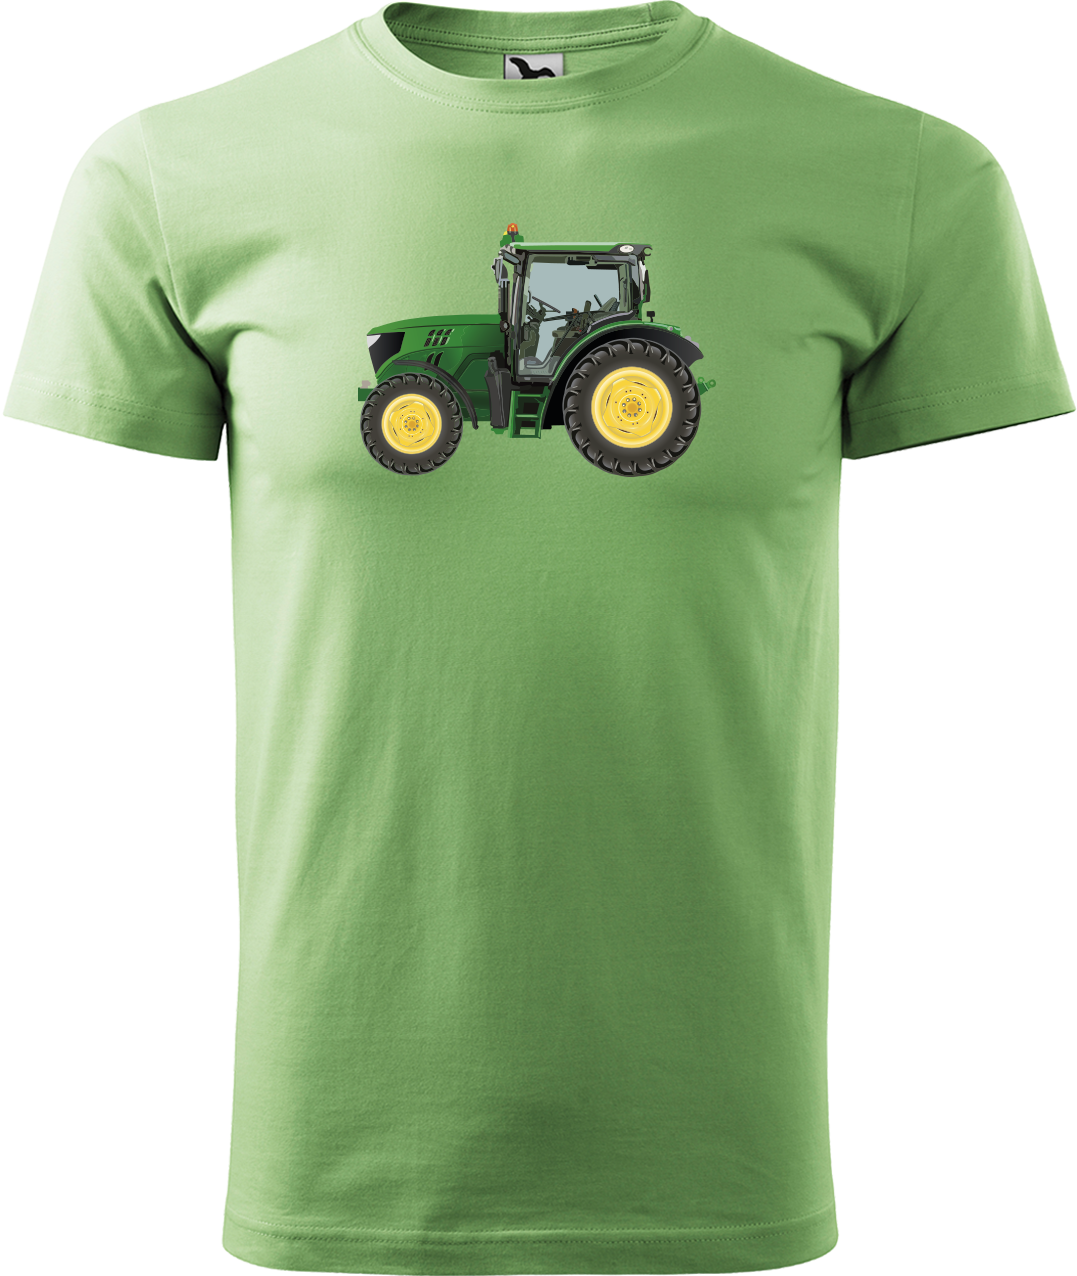 Tričko s traktorem - Zelený traktor Velikost: XL, Barva: Trávově zelená (39)